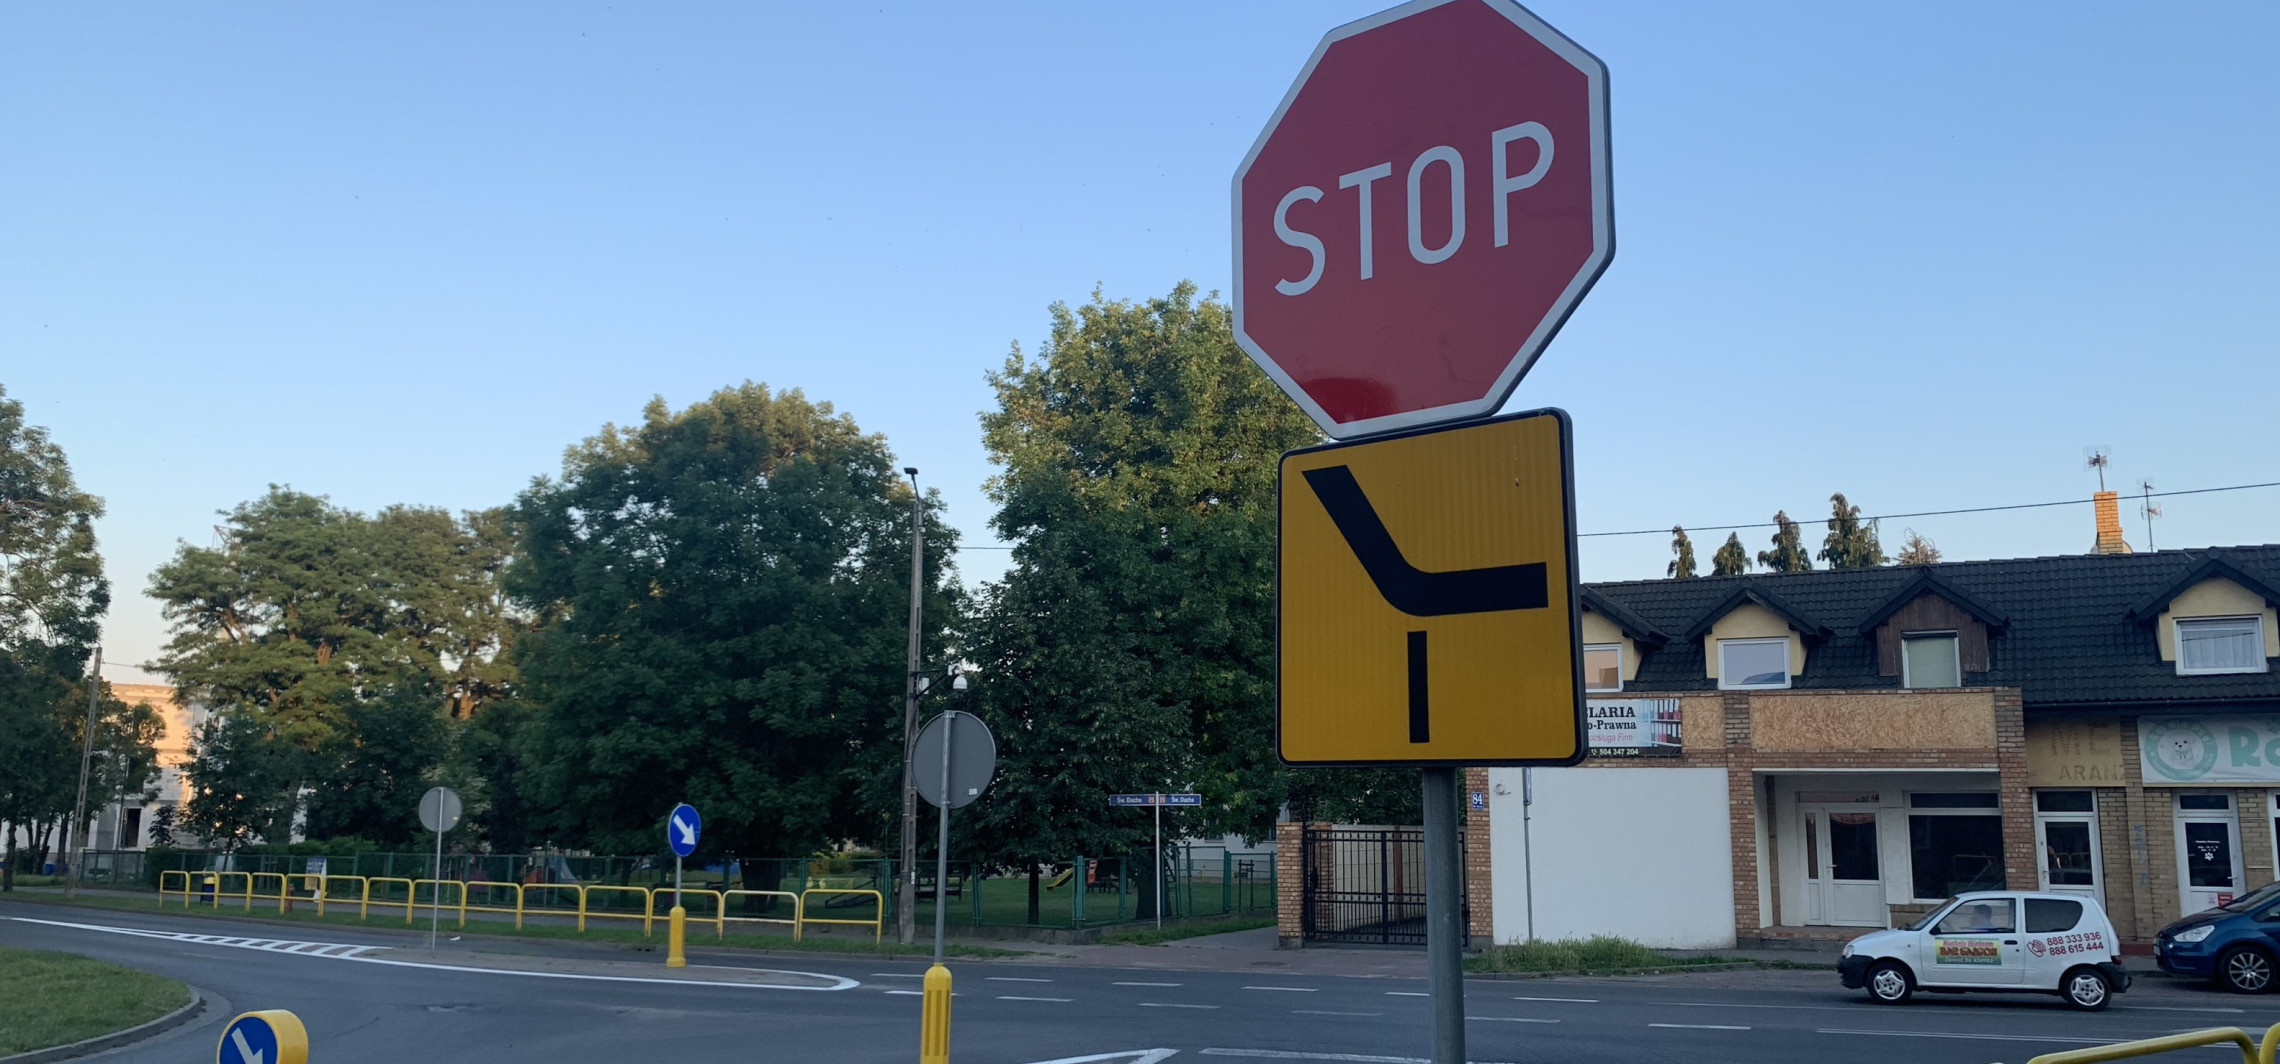 Inowrocław - W Inowrocławiu przybyło kolejnych znaków STOP